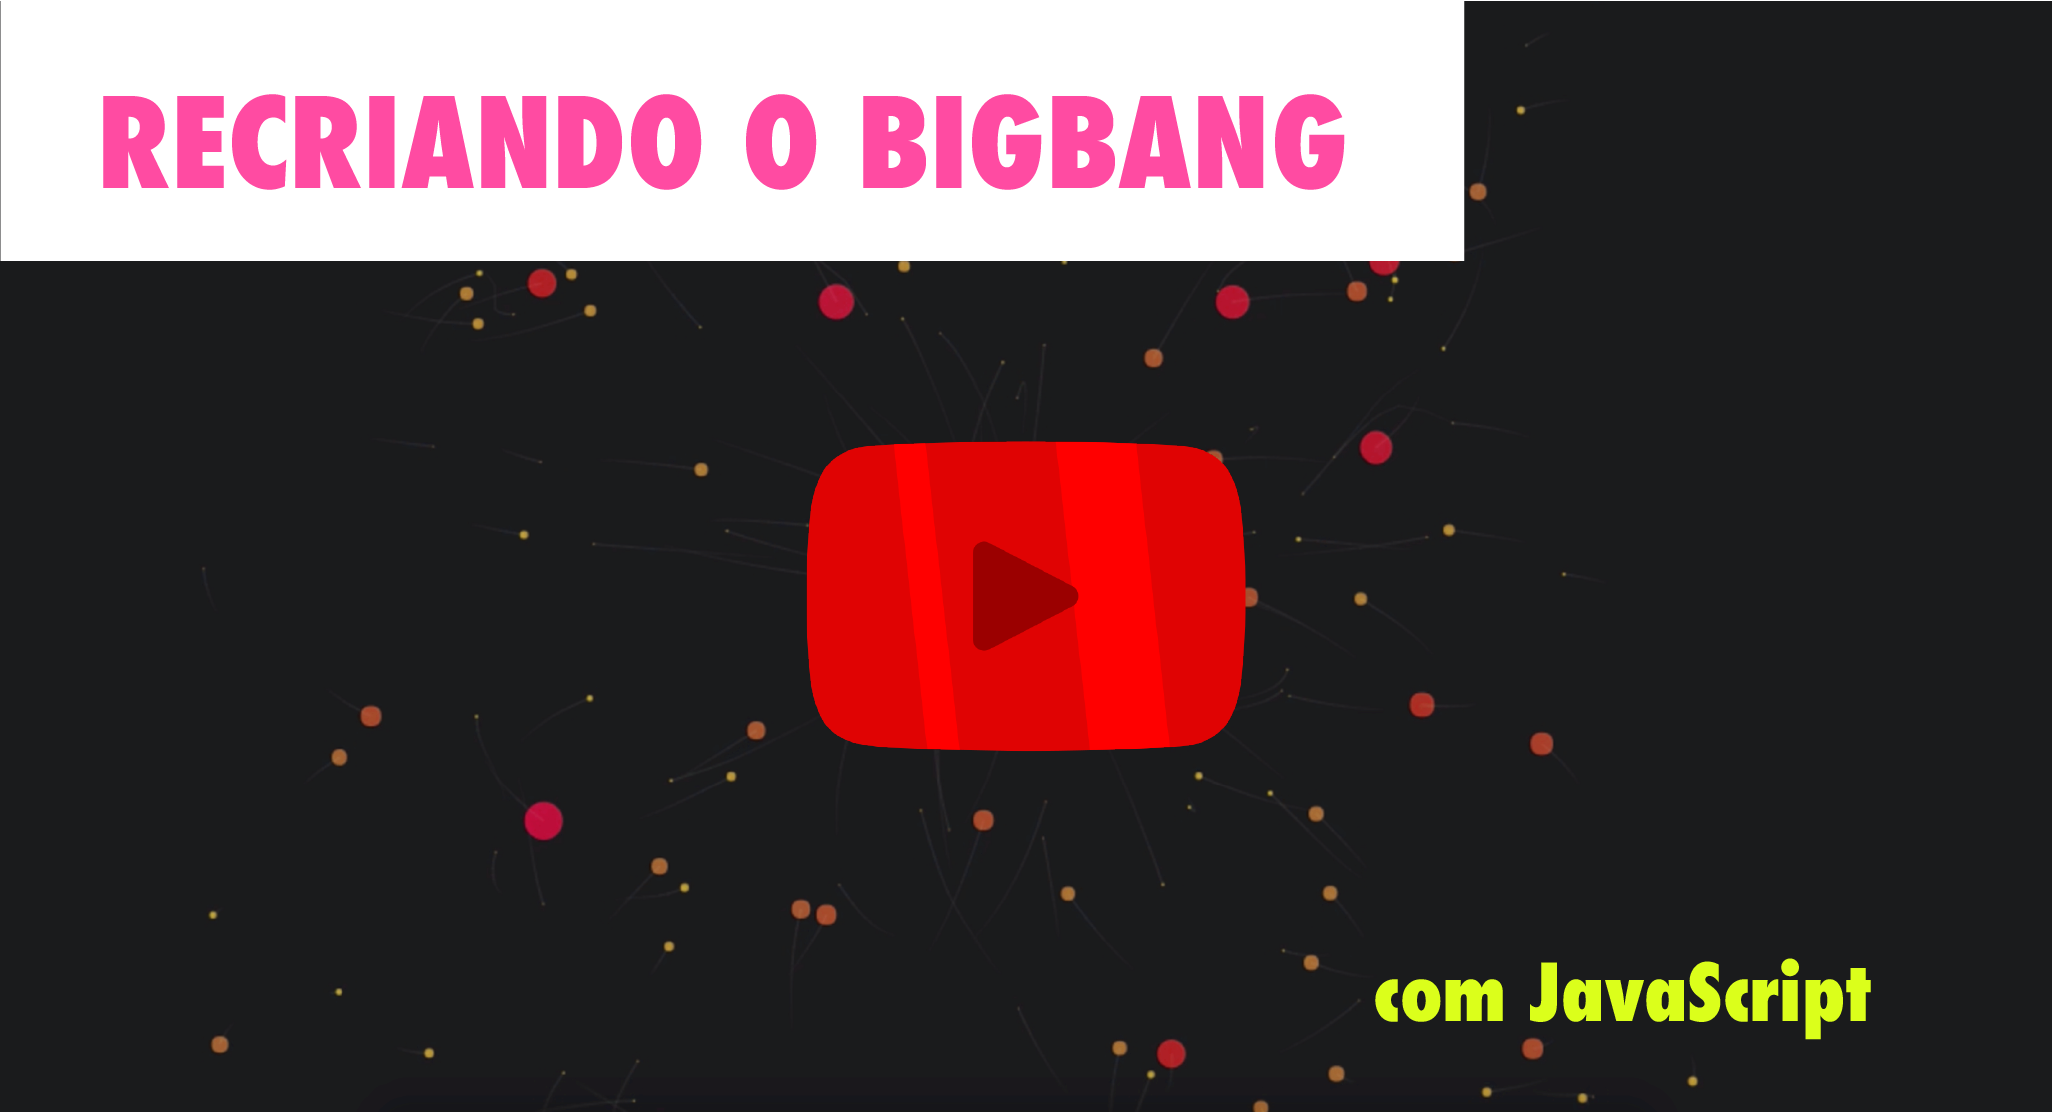 Recriando o BigBang com JavaScript